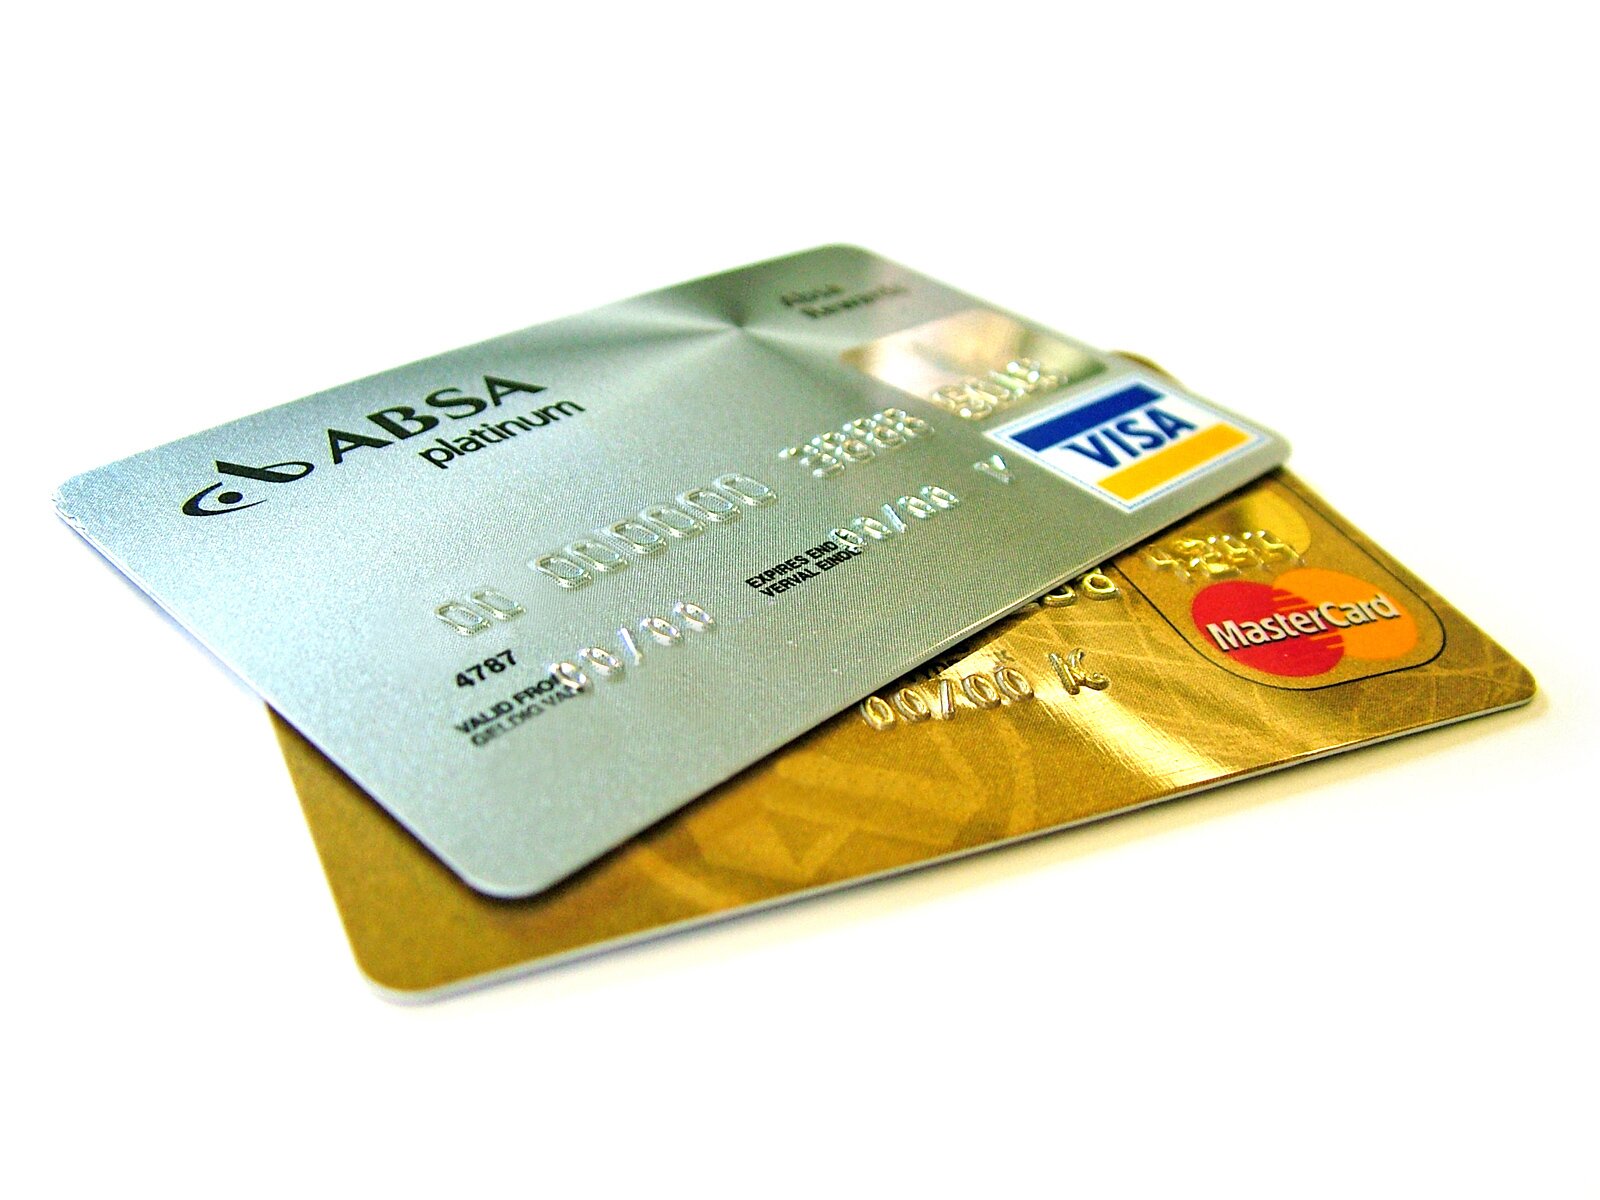 Karty bankowe-kredytowe (zwane plastikowym pieniądzem) Źródło: Lotus Head, Karty bankowe-kredytowe (zwane plastikowym pieniądzem), licencja: CC BY-SA 3.0.